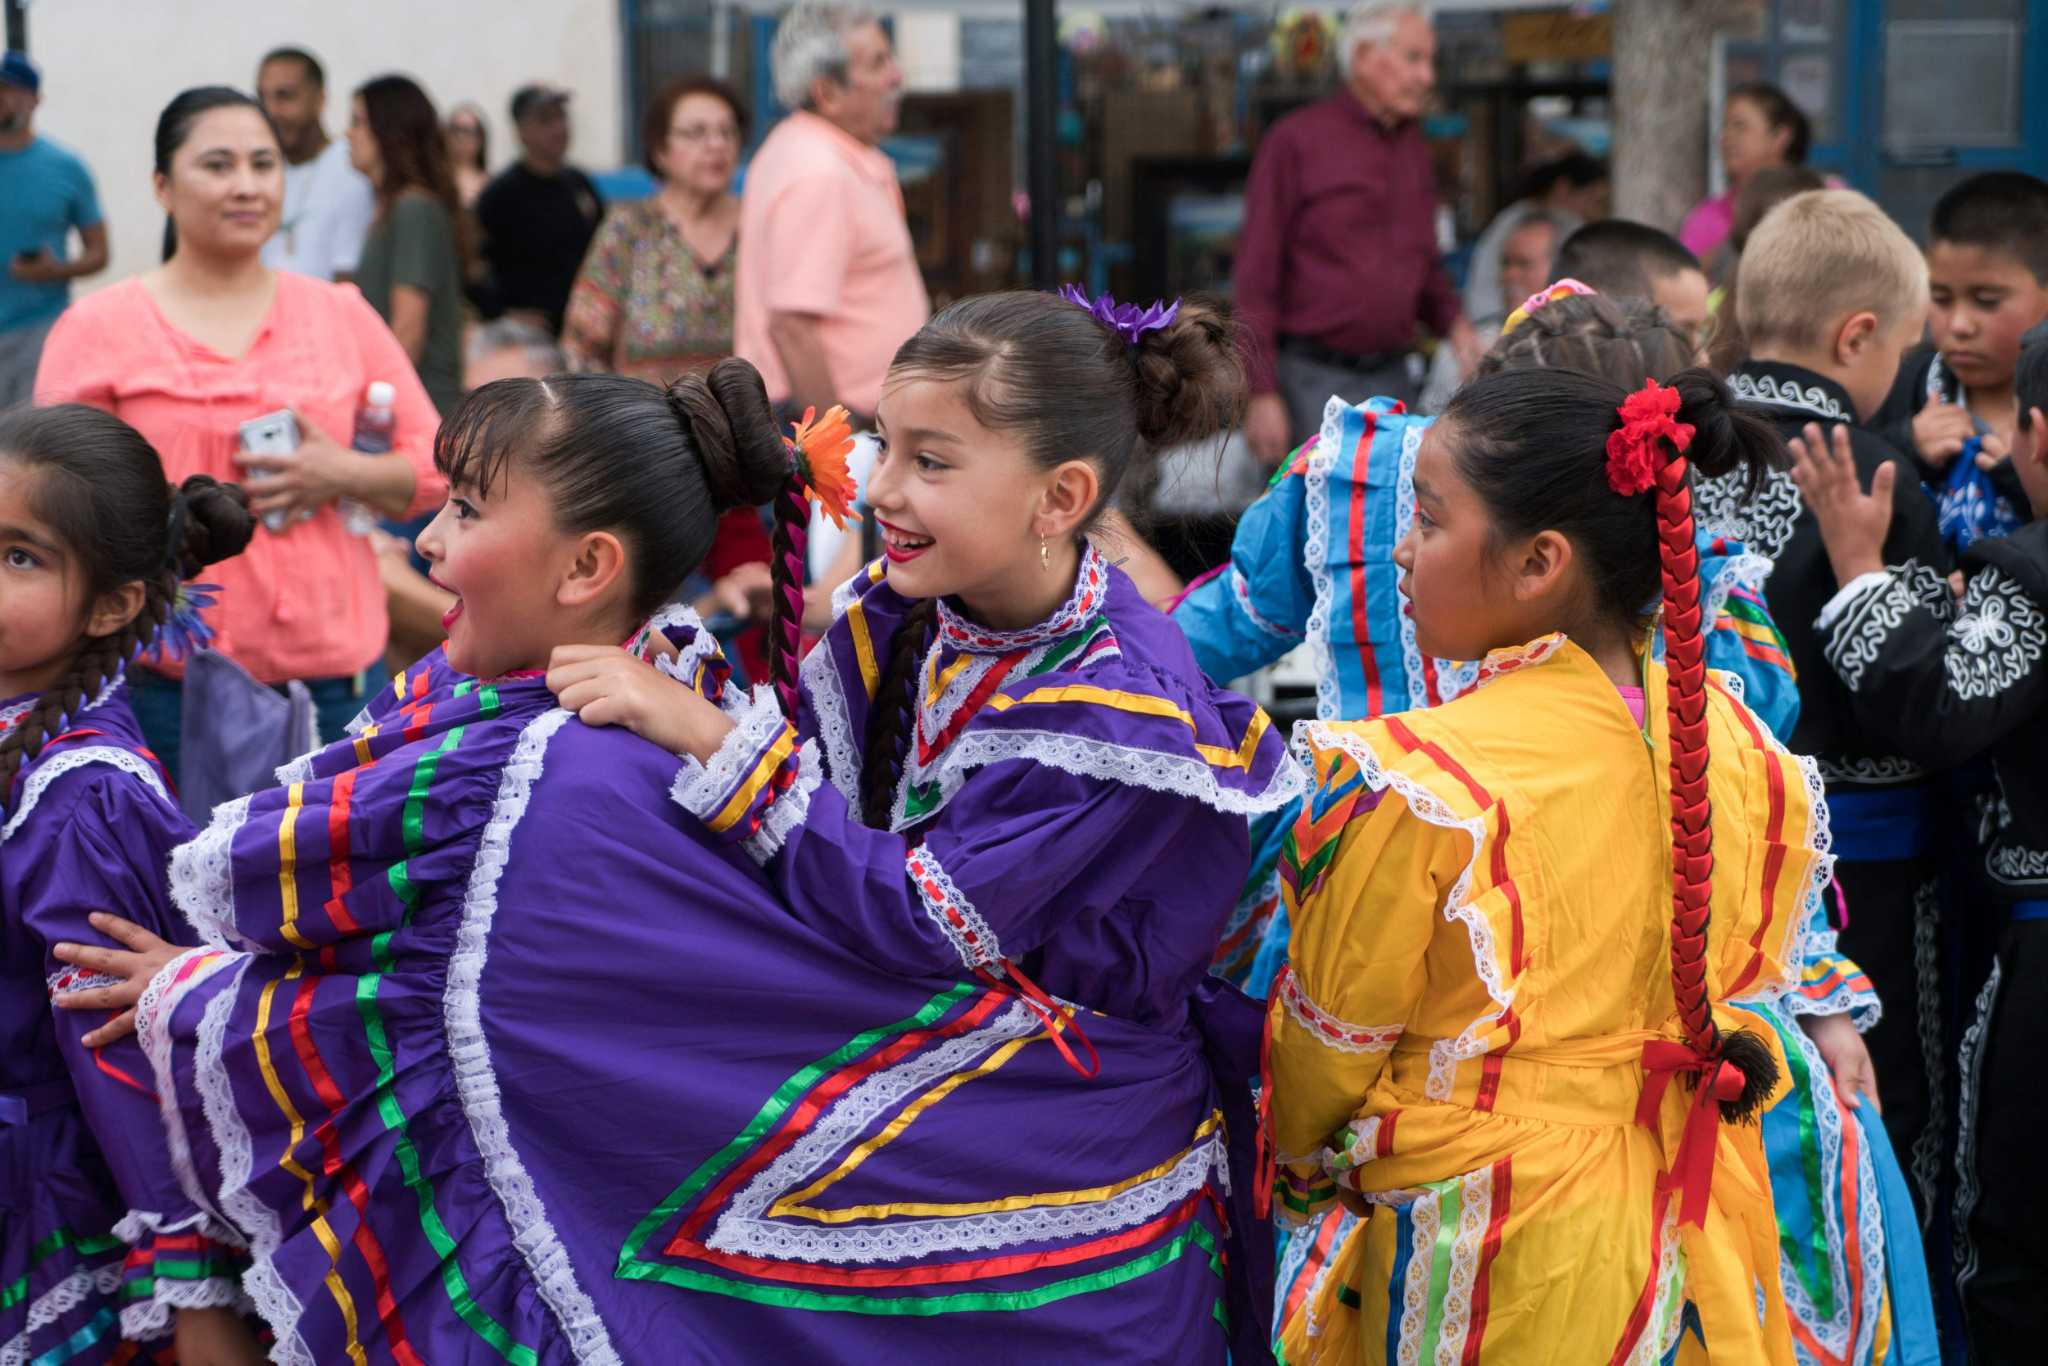 Cultural appropriation or cultural appreciation? - San Antonio Express-News